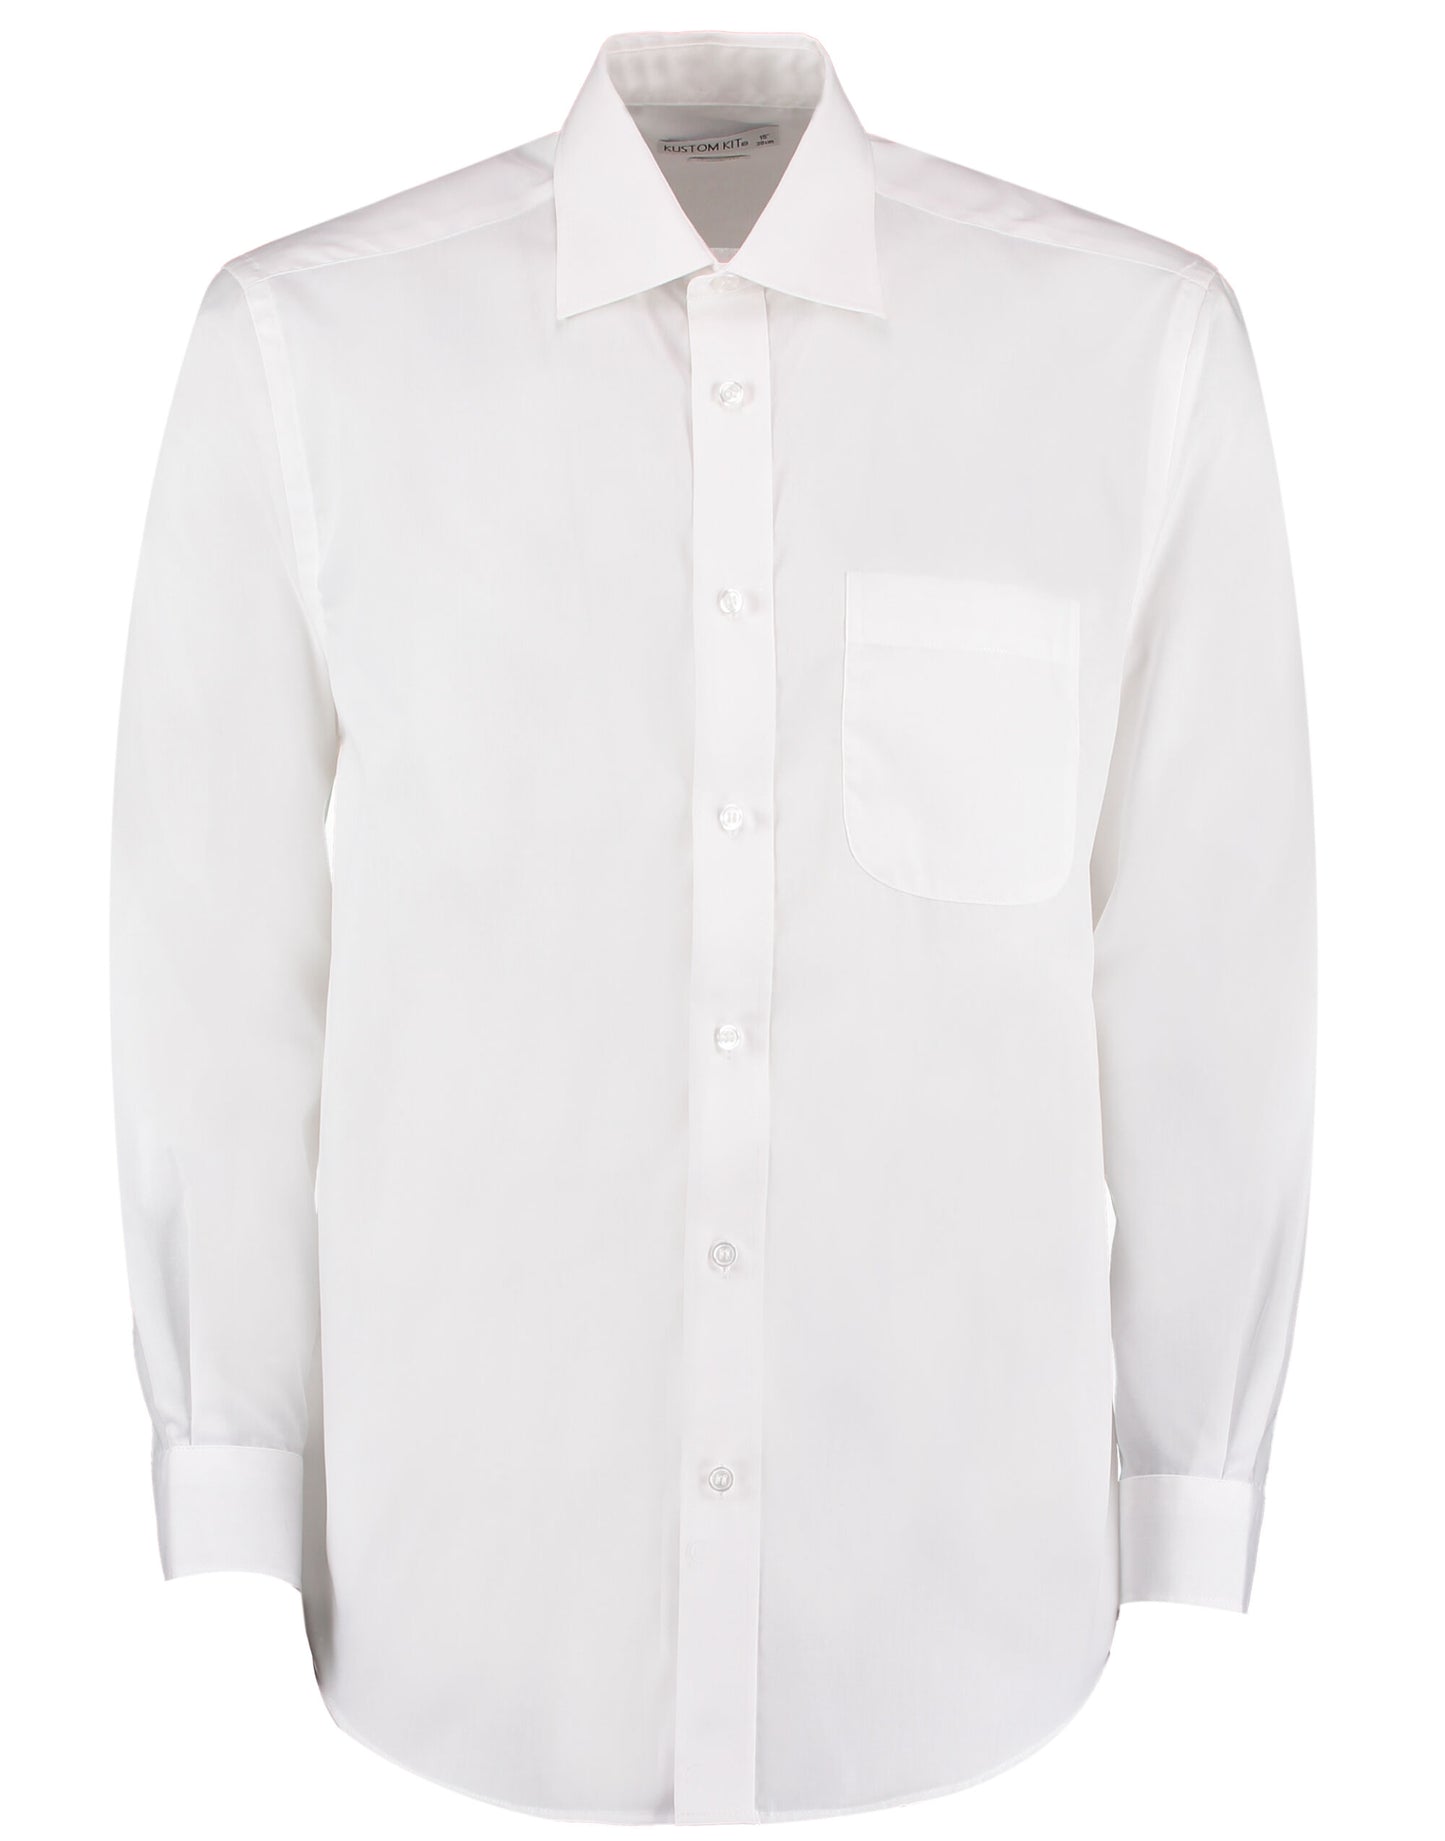 KK104 Kustom Kit Business Shirt Long Sleeve